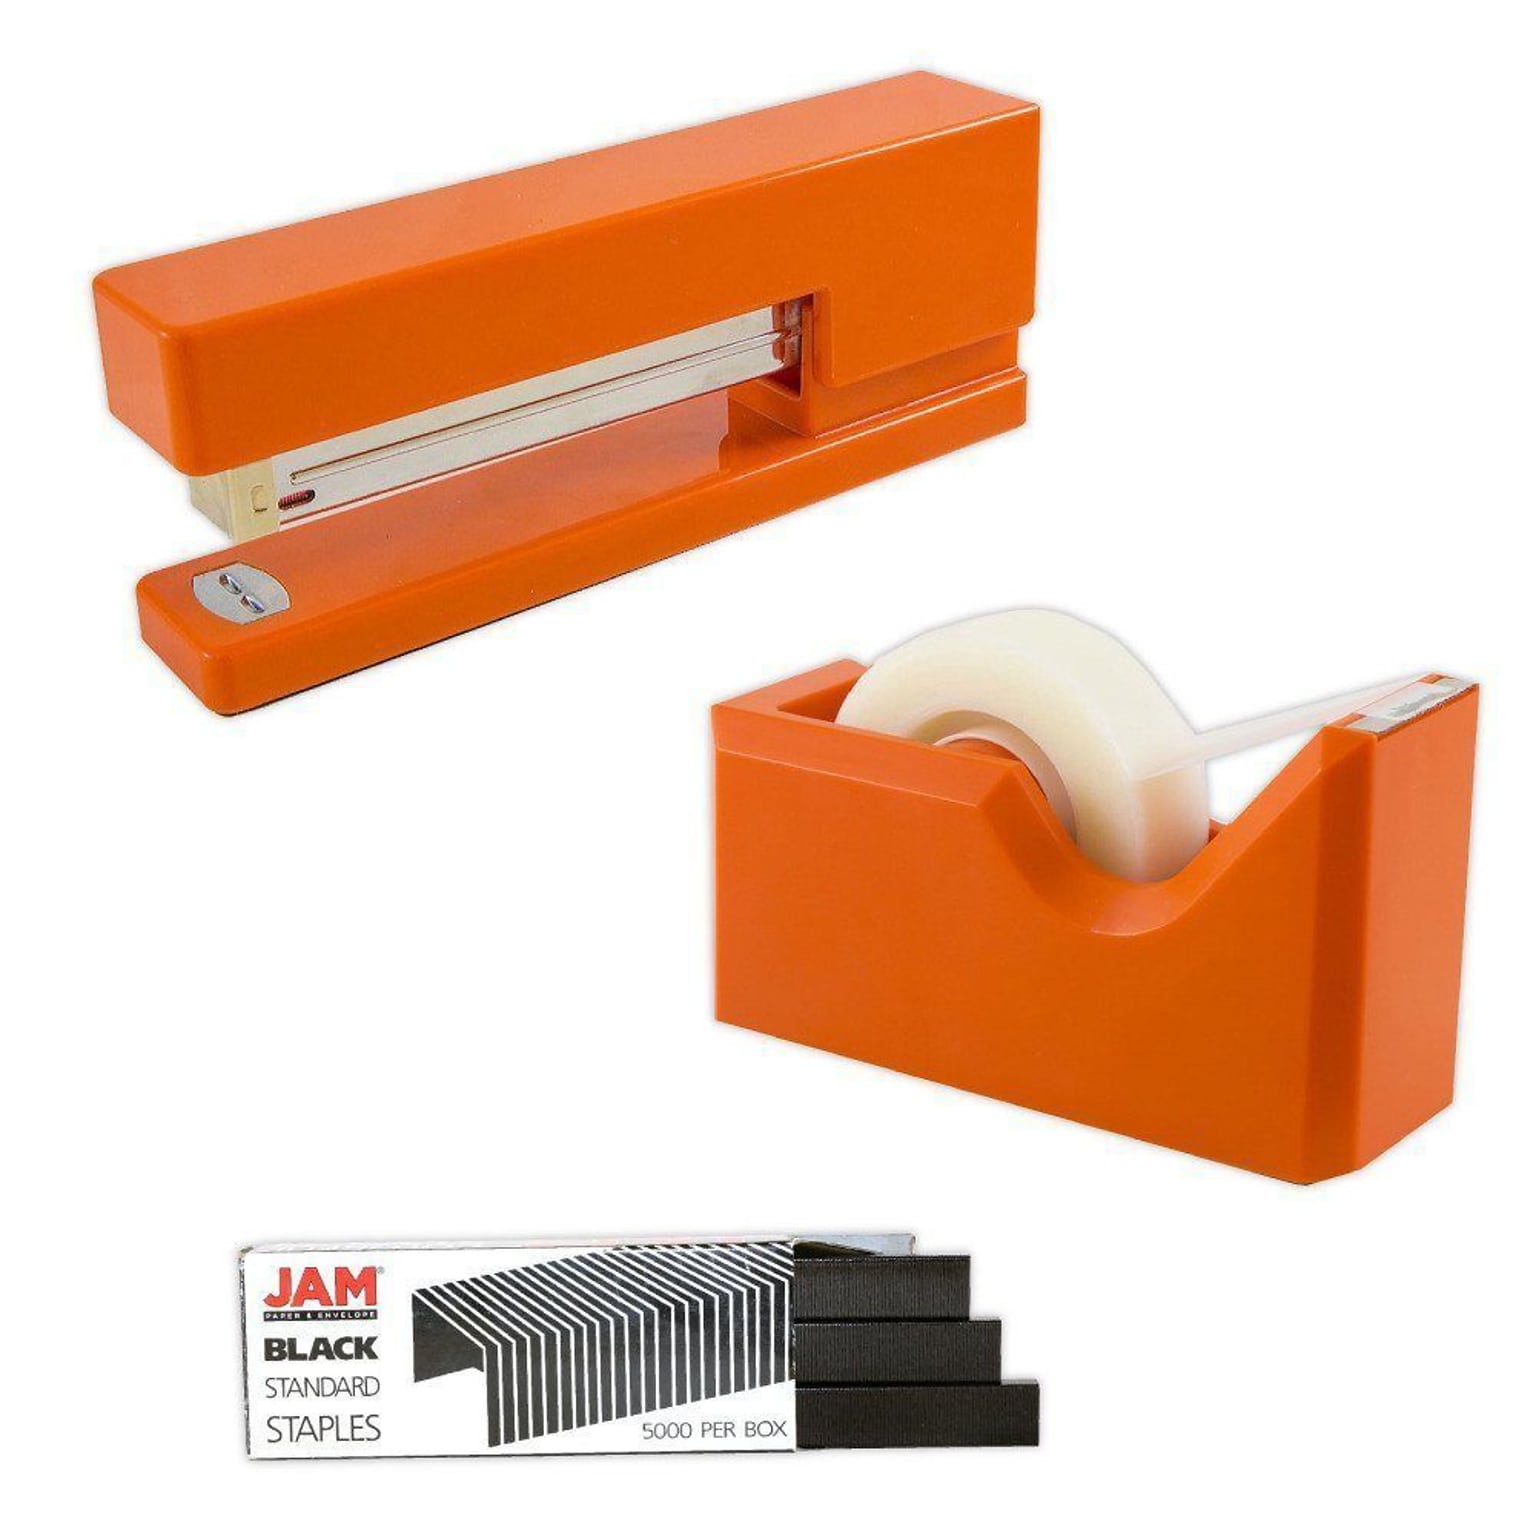 JAM PaperOffice & Desk Sets, (1) Tape Dispenser (1) Stapler (1) Pack of Staples, 20 Sheet Capacity, Orange and Black (33758ORBK